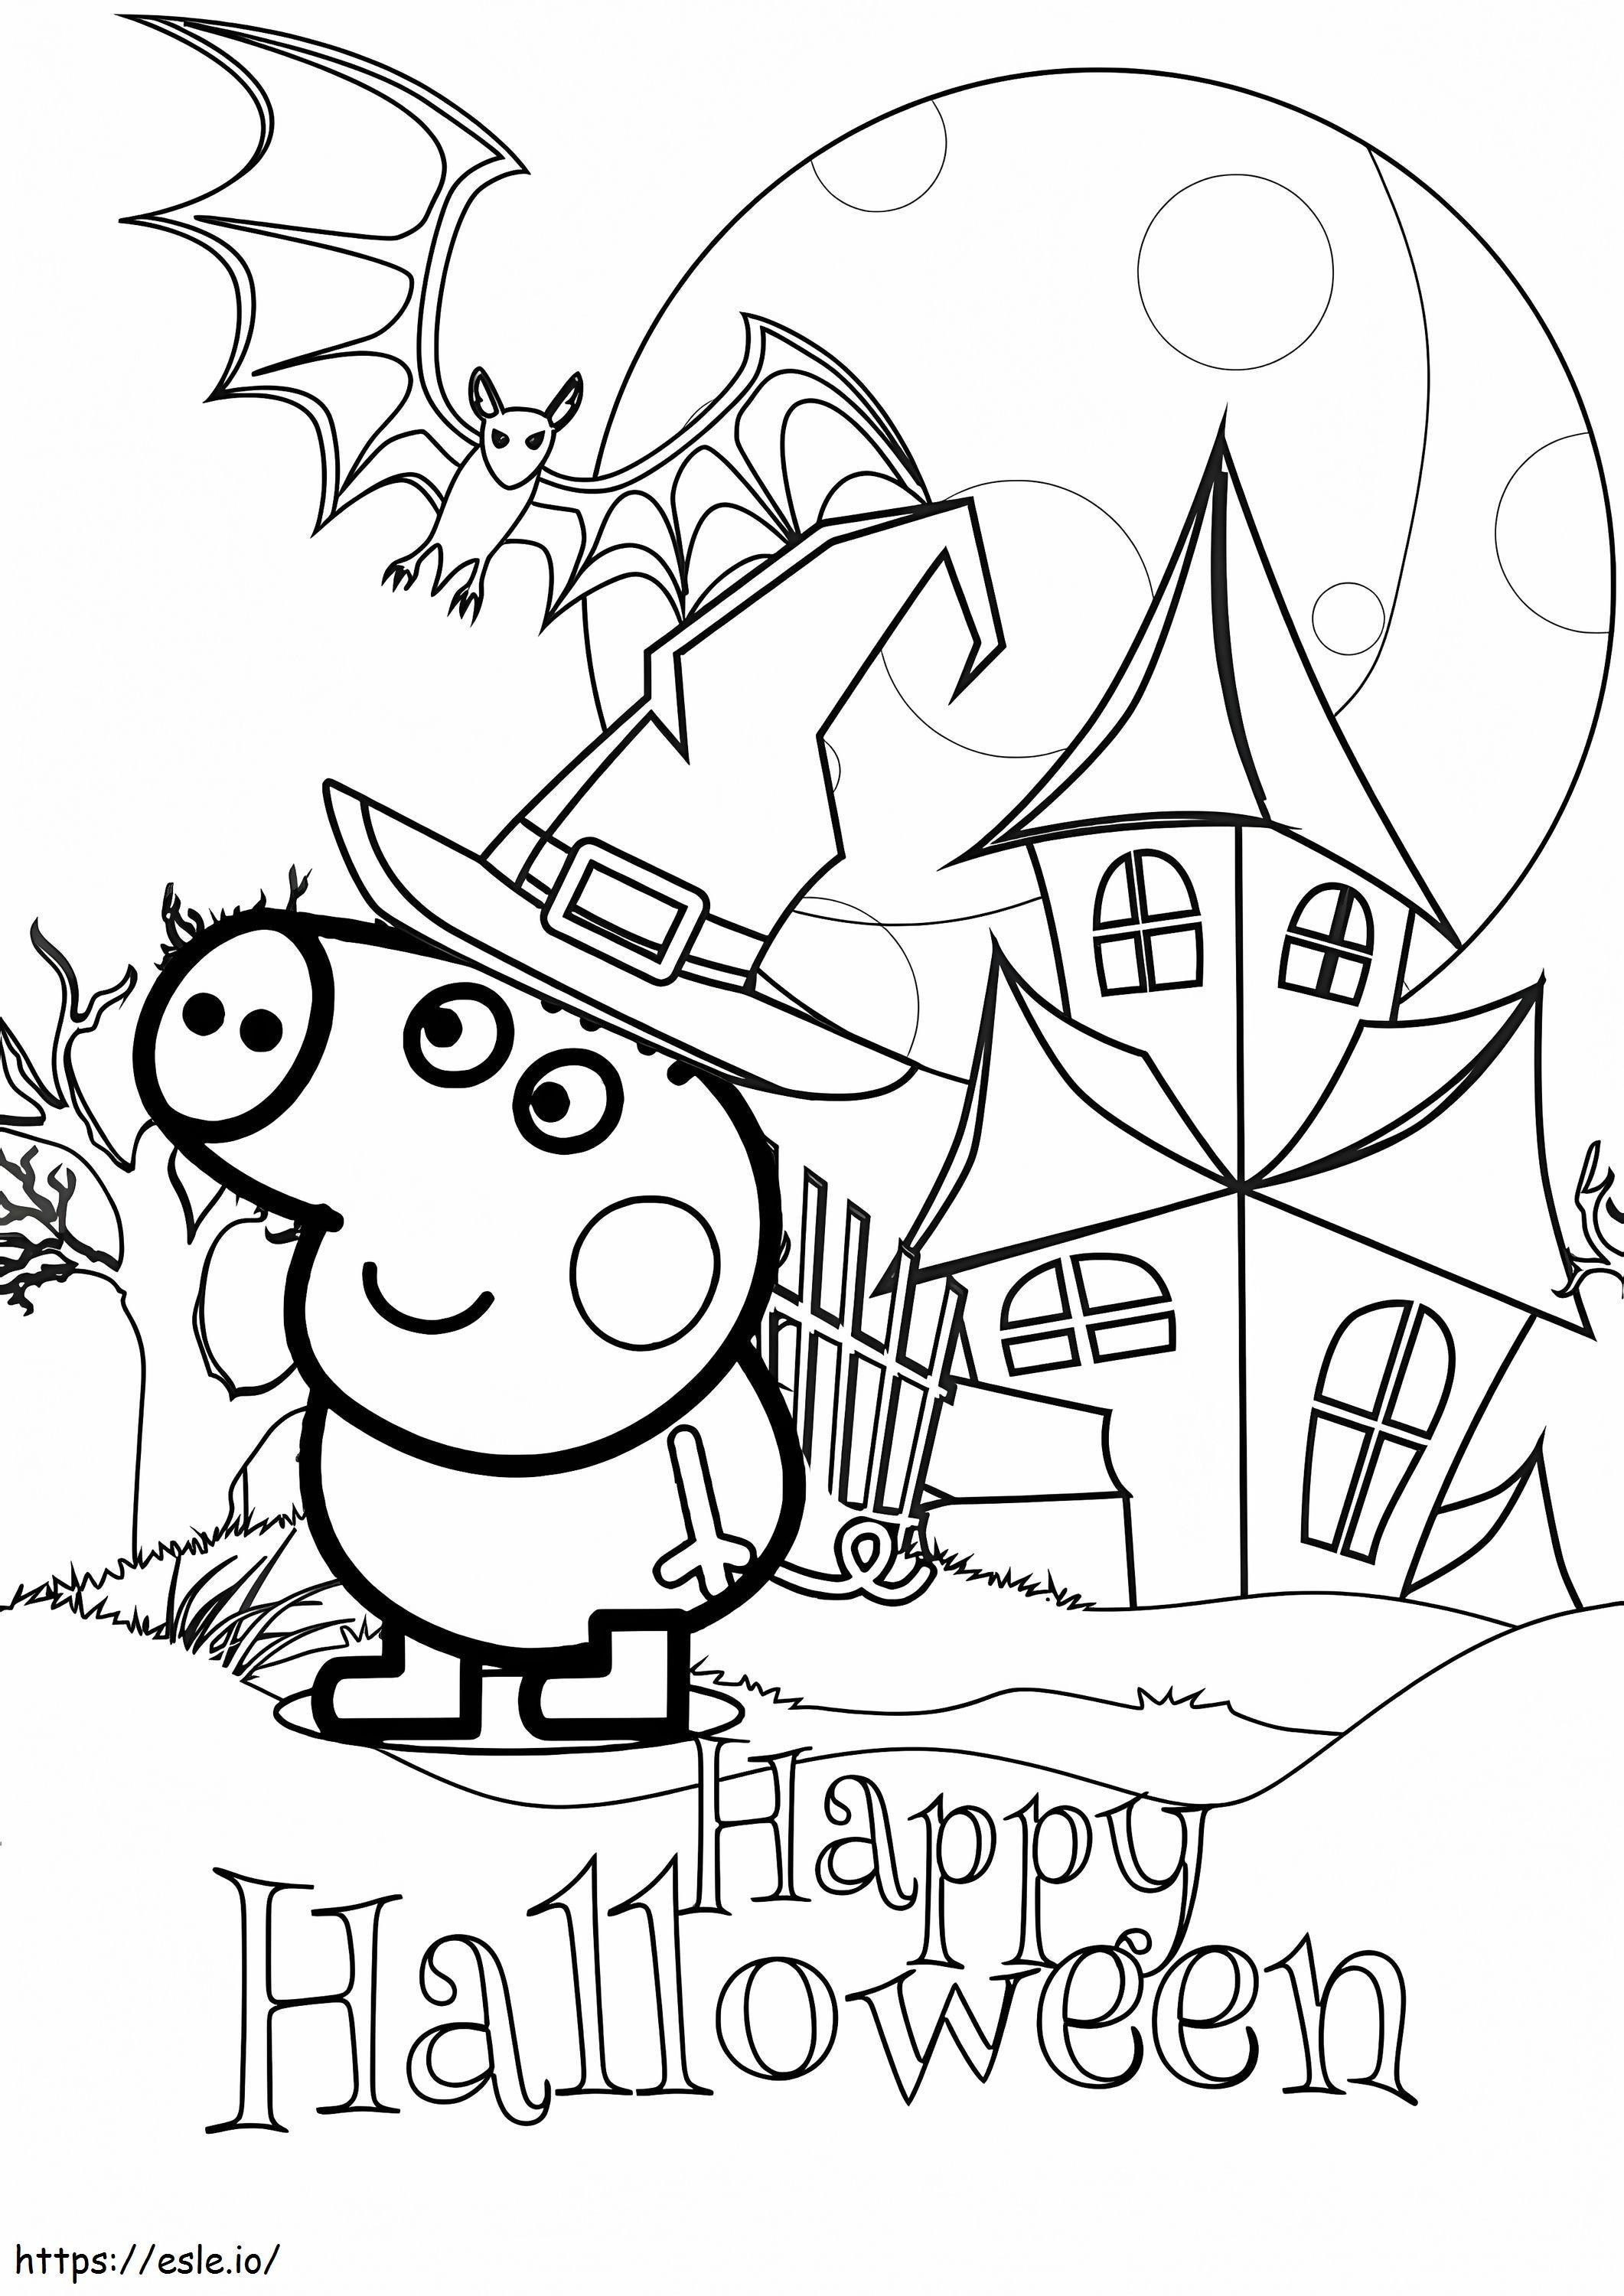 Peppa Pig Un Halloween da colorare